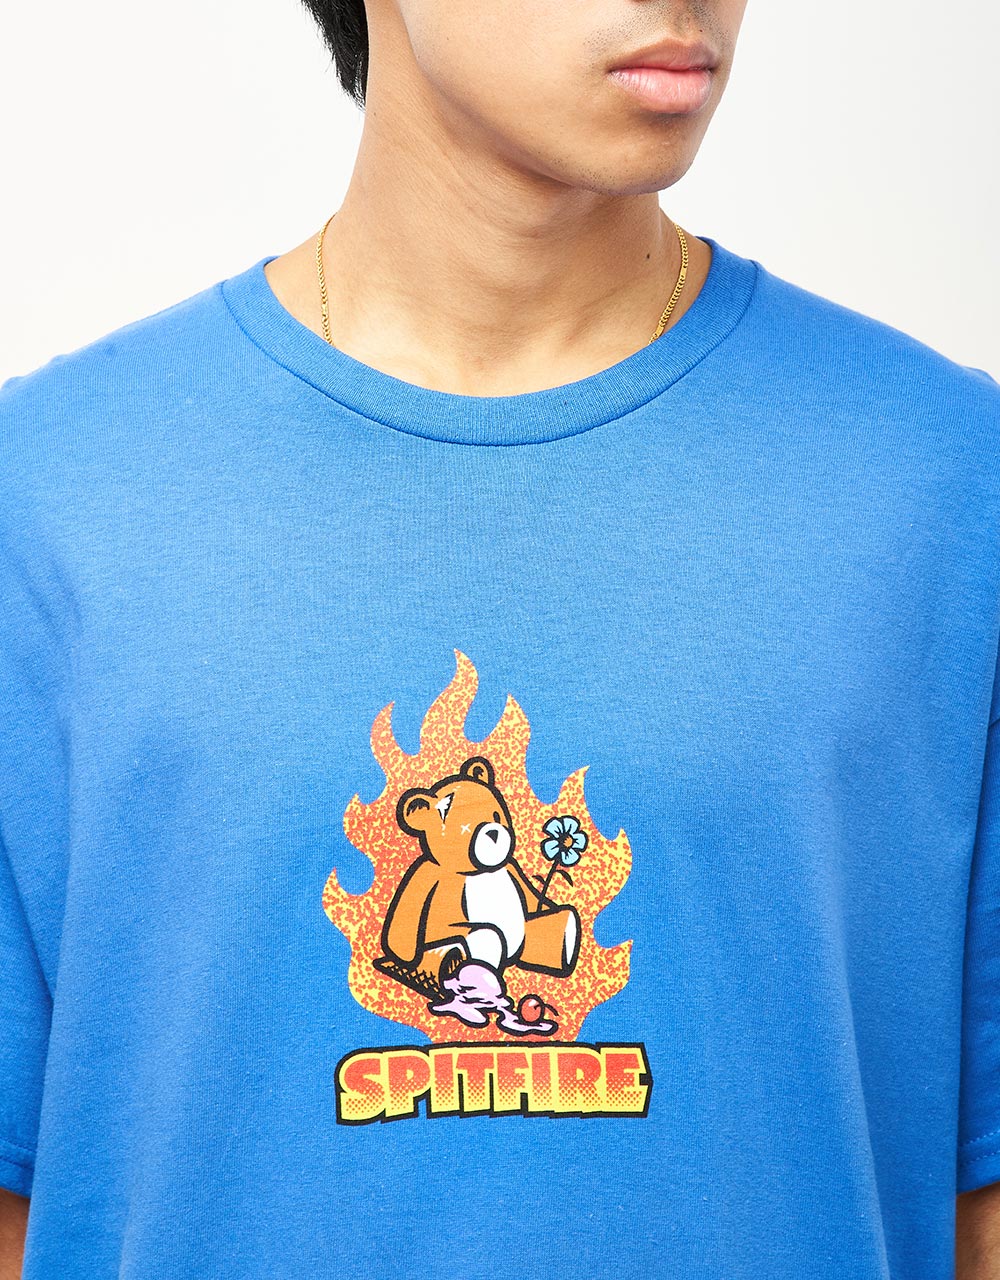 Spitfire Lil Beatdowns T-Shirt - Royal